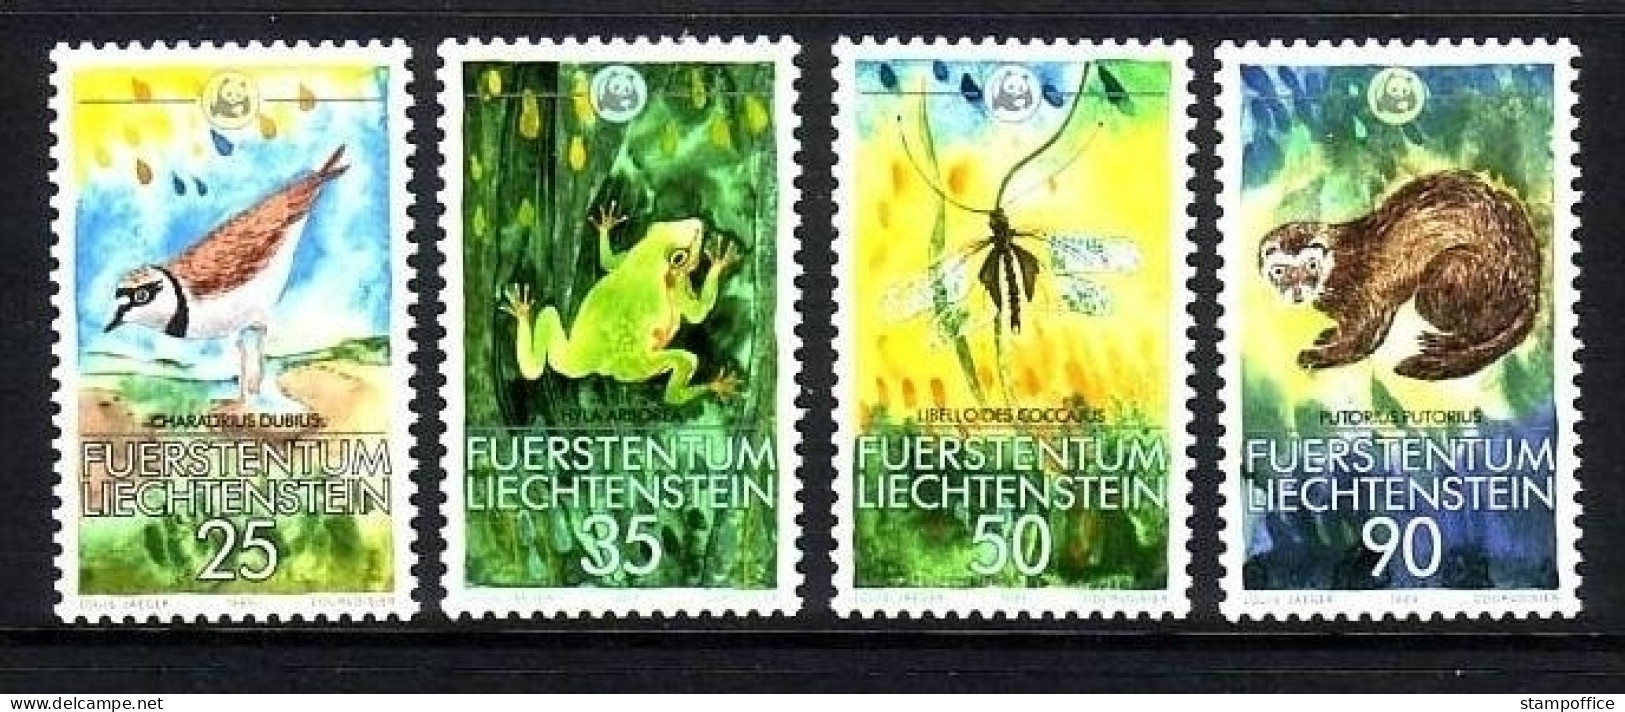 LIECHTENSTEIN MI-NR. 967-970 POSTFRISCH WWF 1989 FLUSSREGENPFEIFFER FROSCH LIBELLE ILTIS - Frogs